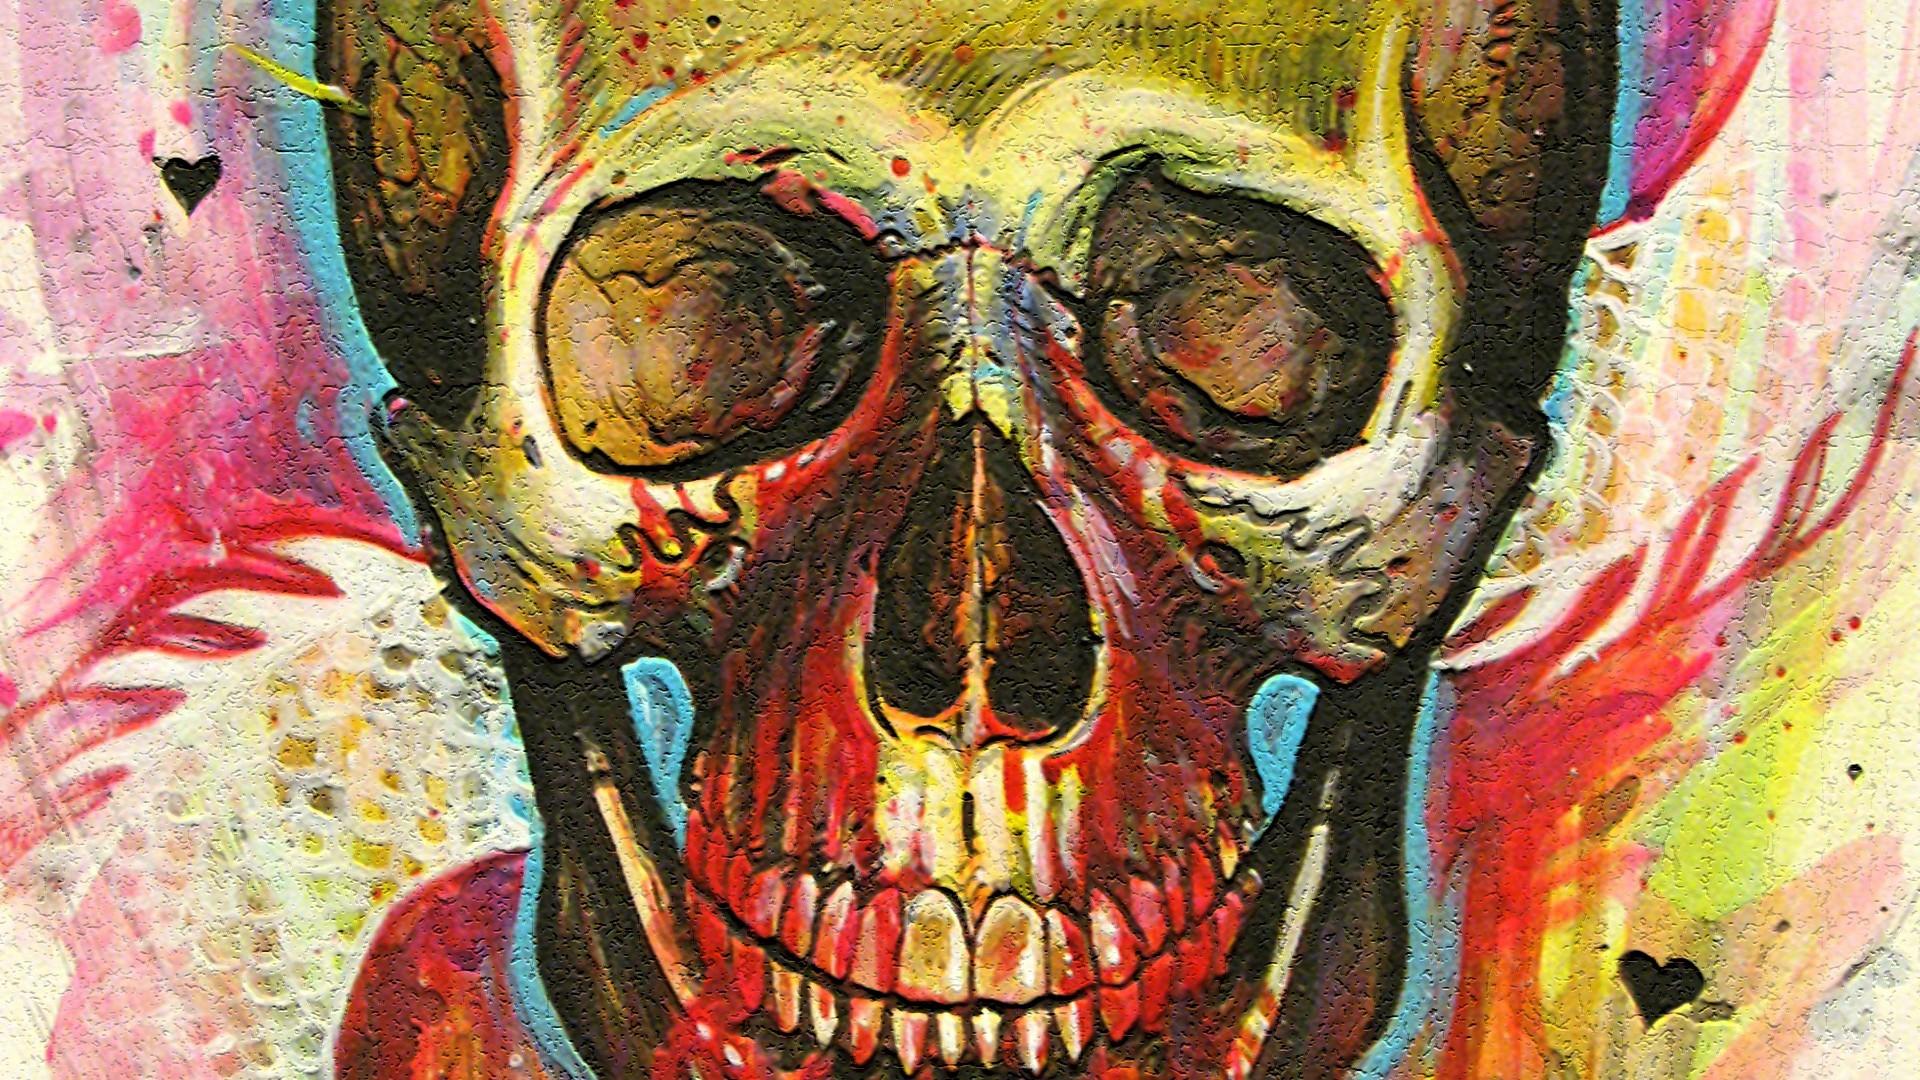 Download Skull Wallpaper Leaves RoyaltyFree Stock Illustration Image   Pixabay